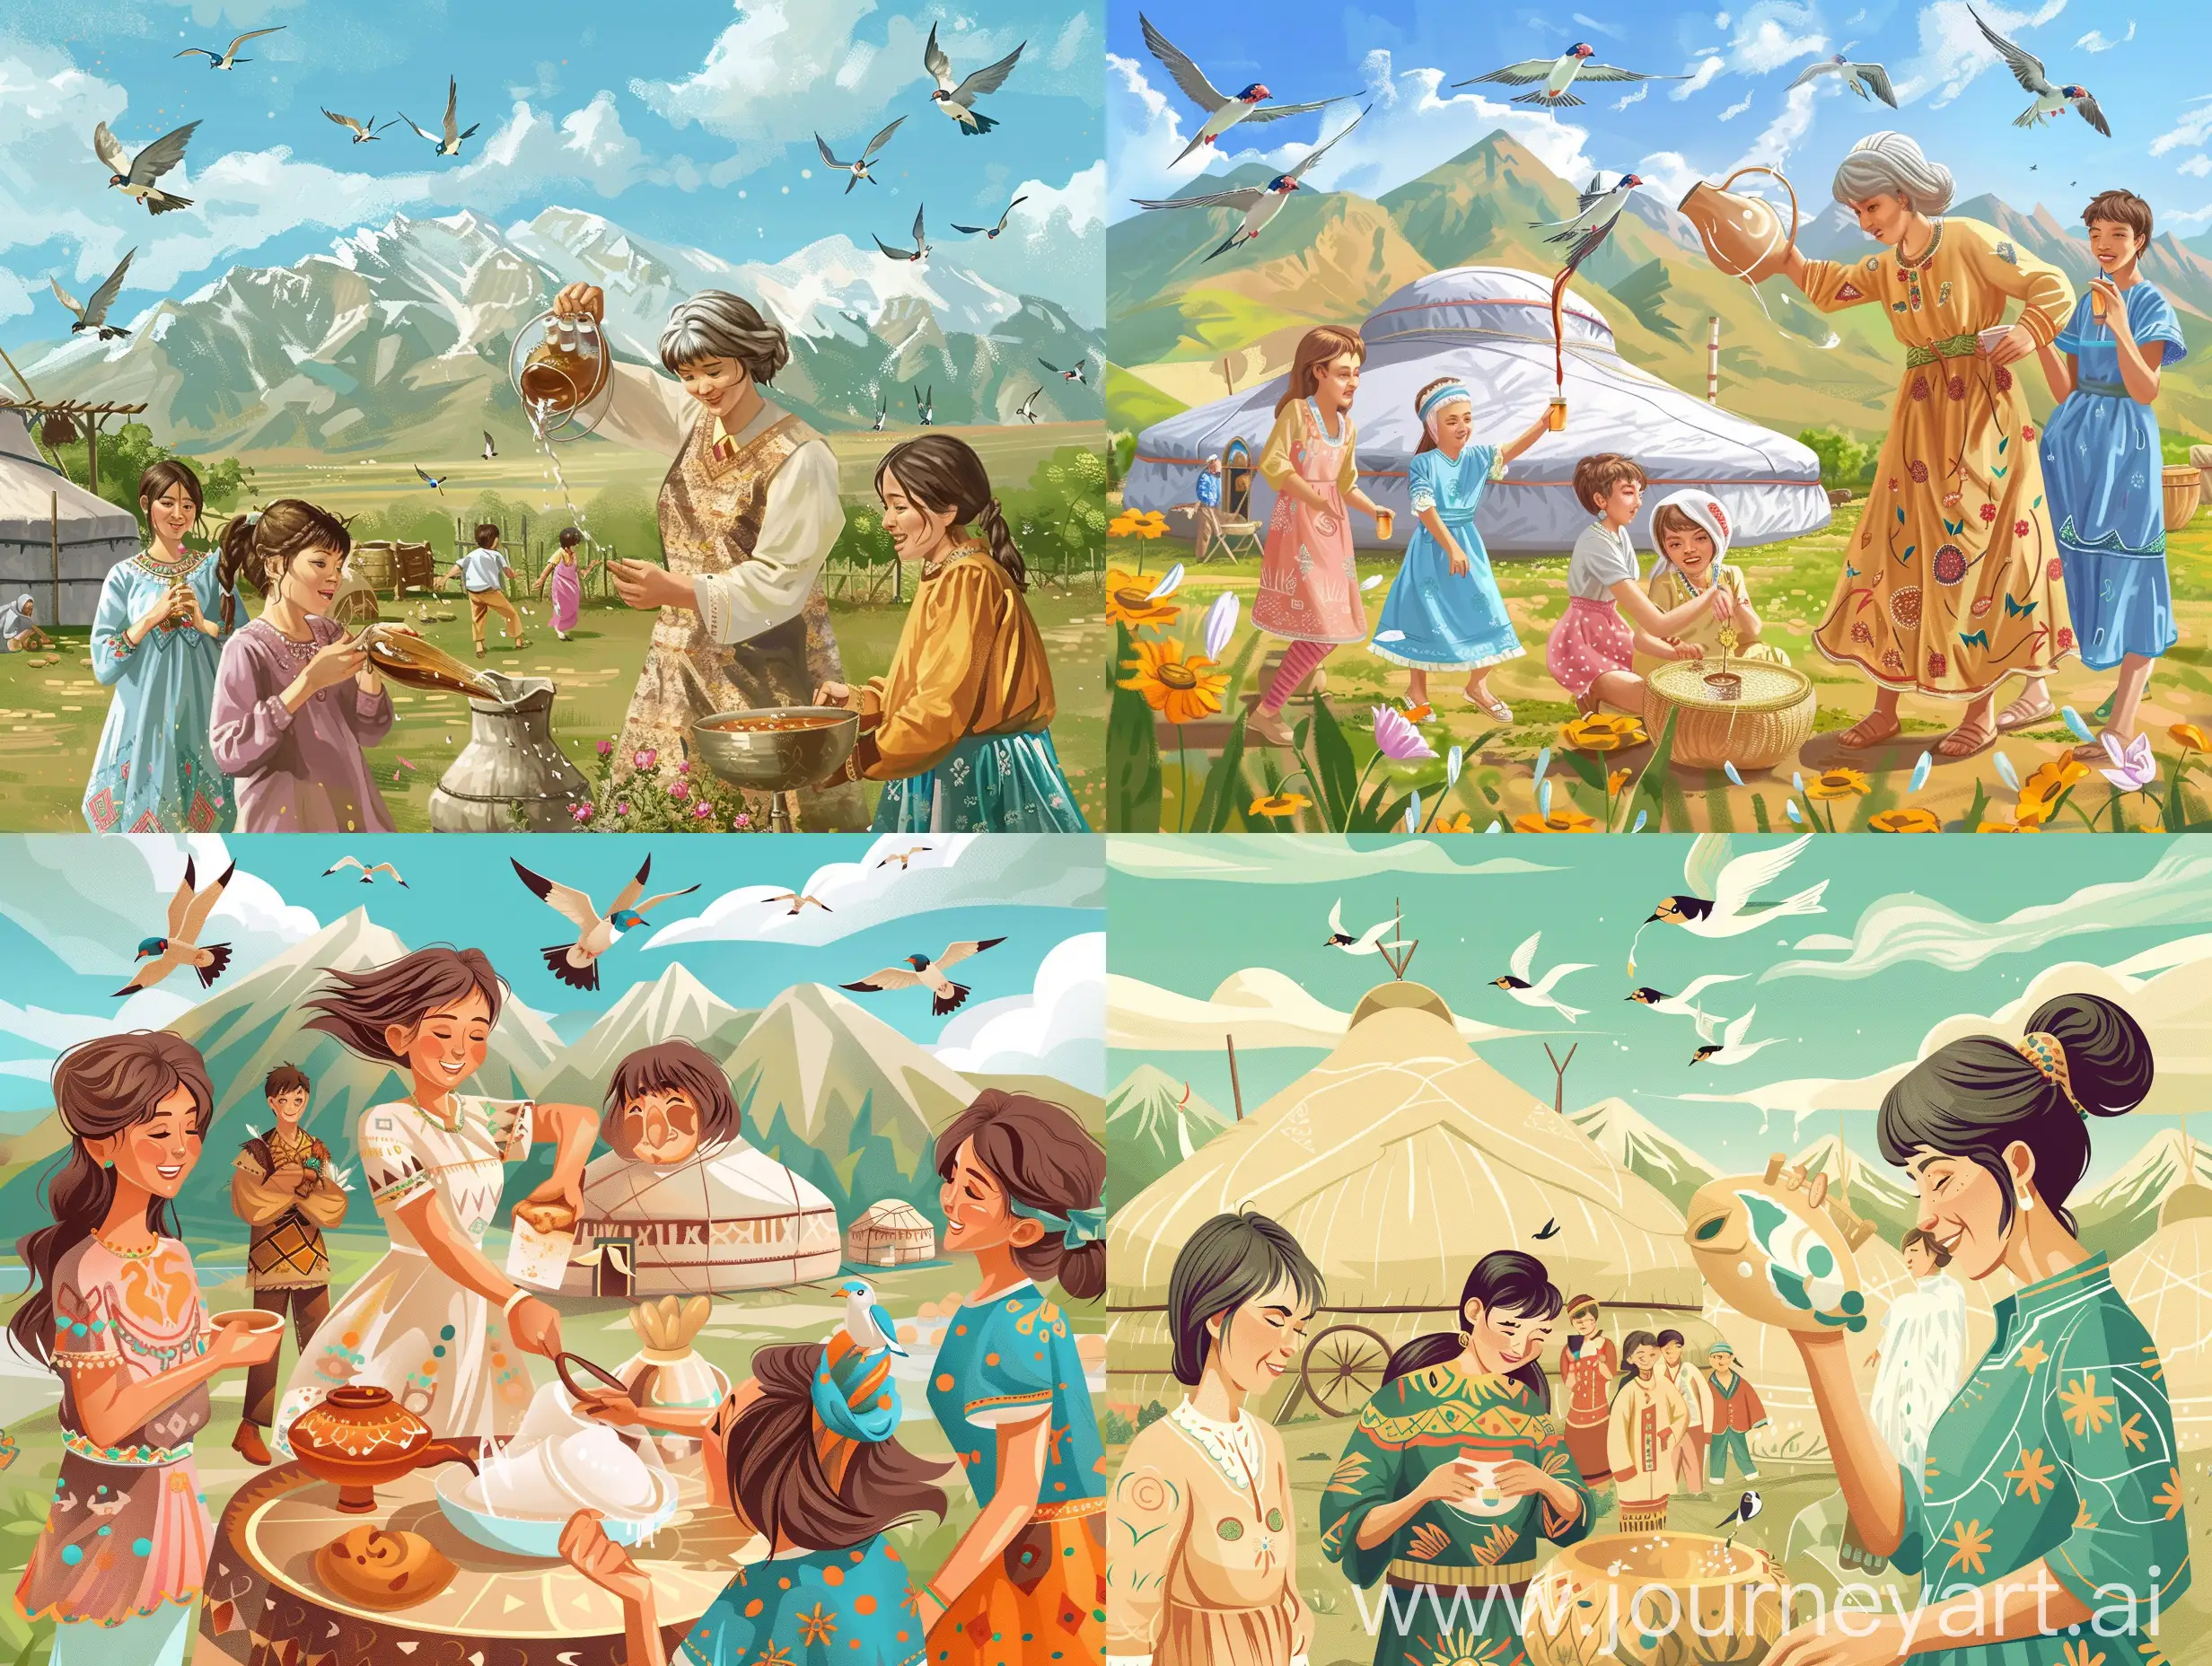 сгенерируй картинку для баннера на тему наурыз в казахстане, где атмосфера праздника, весны и радости, девушки и джигиты на алтыбакане, бабушка в кимешеке наливает кумыс, летают ласточки, фон юрта и горы, жайлау